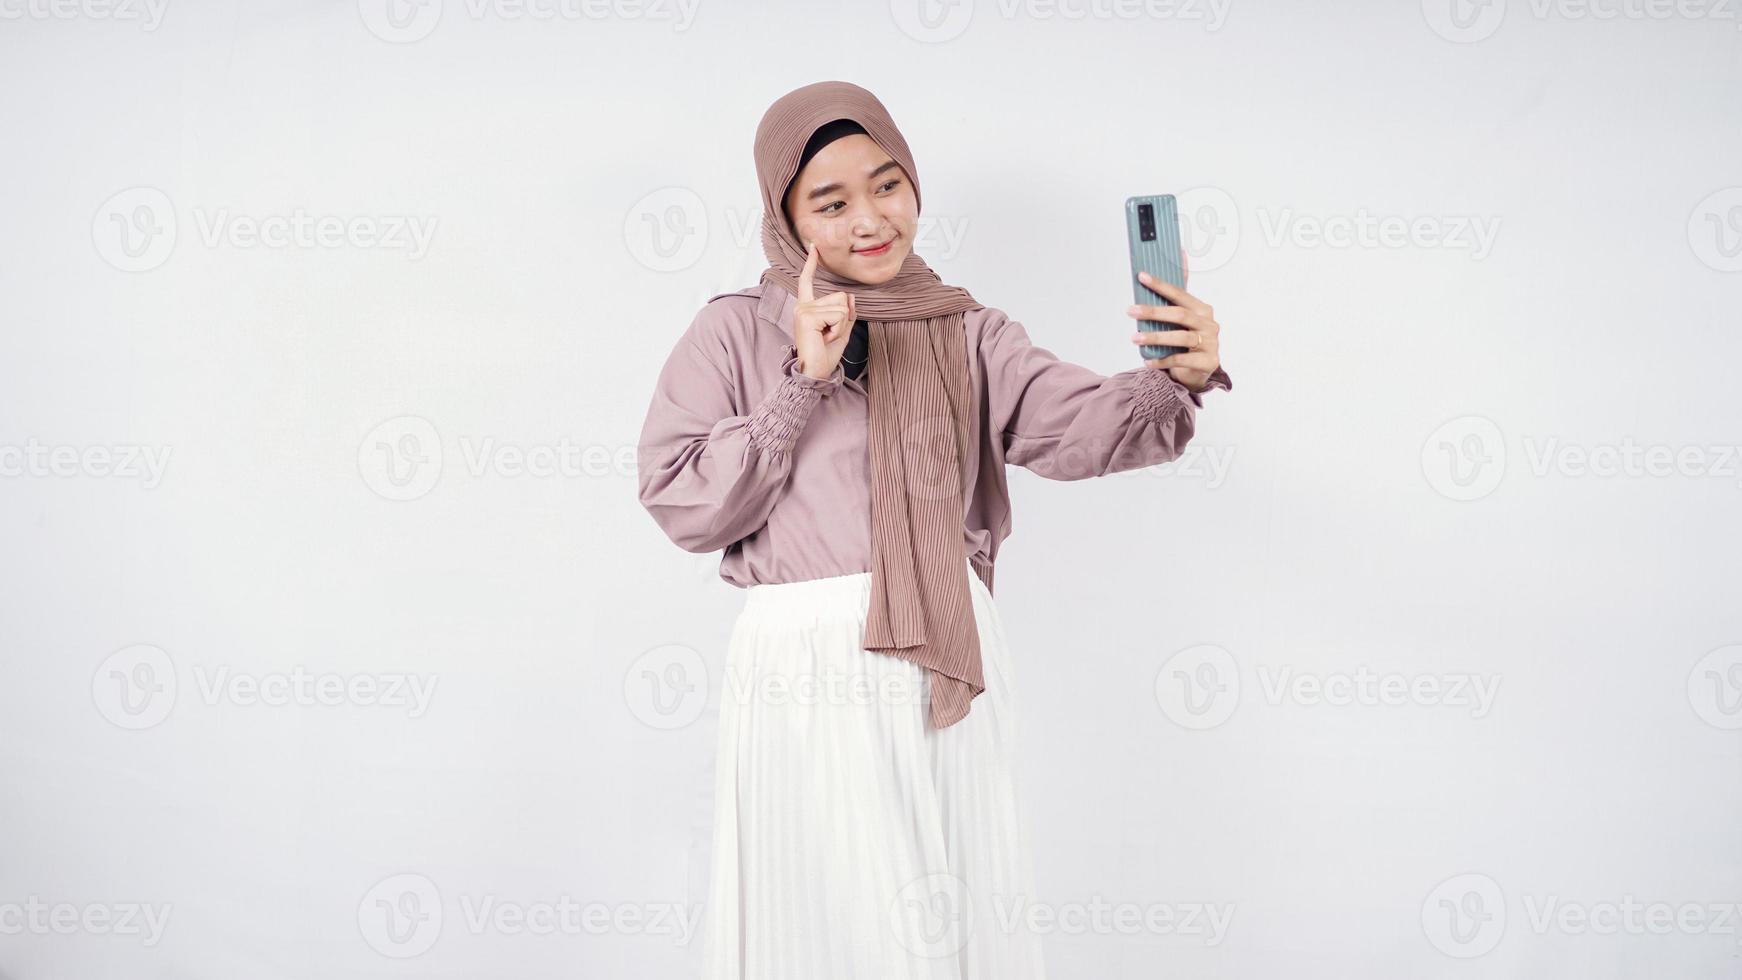 schöne Frau im Hijab lächelnden Ausdruck zeigt auf süße Wange isoliert auf weißem Hintergrund foto